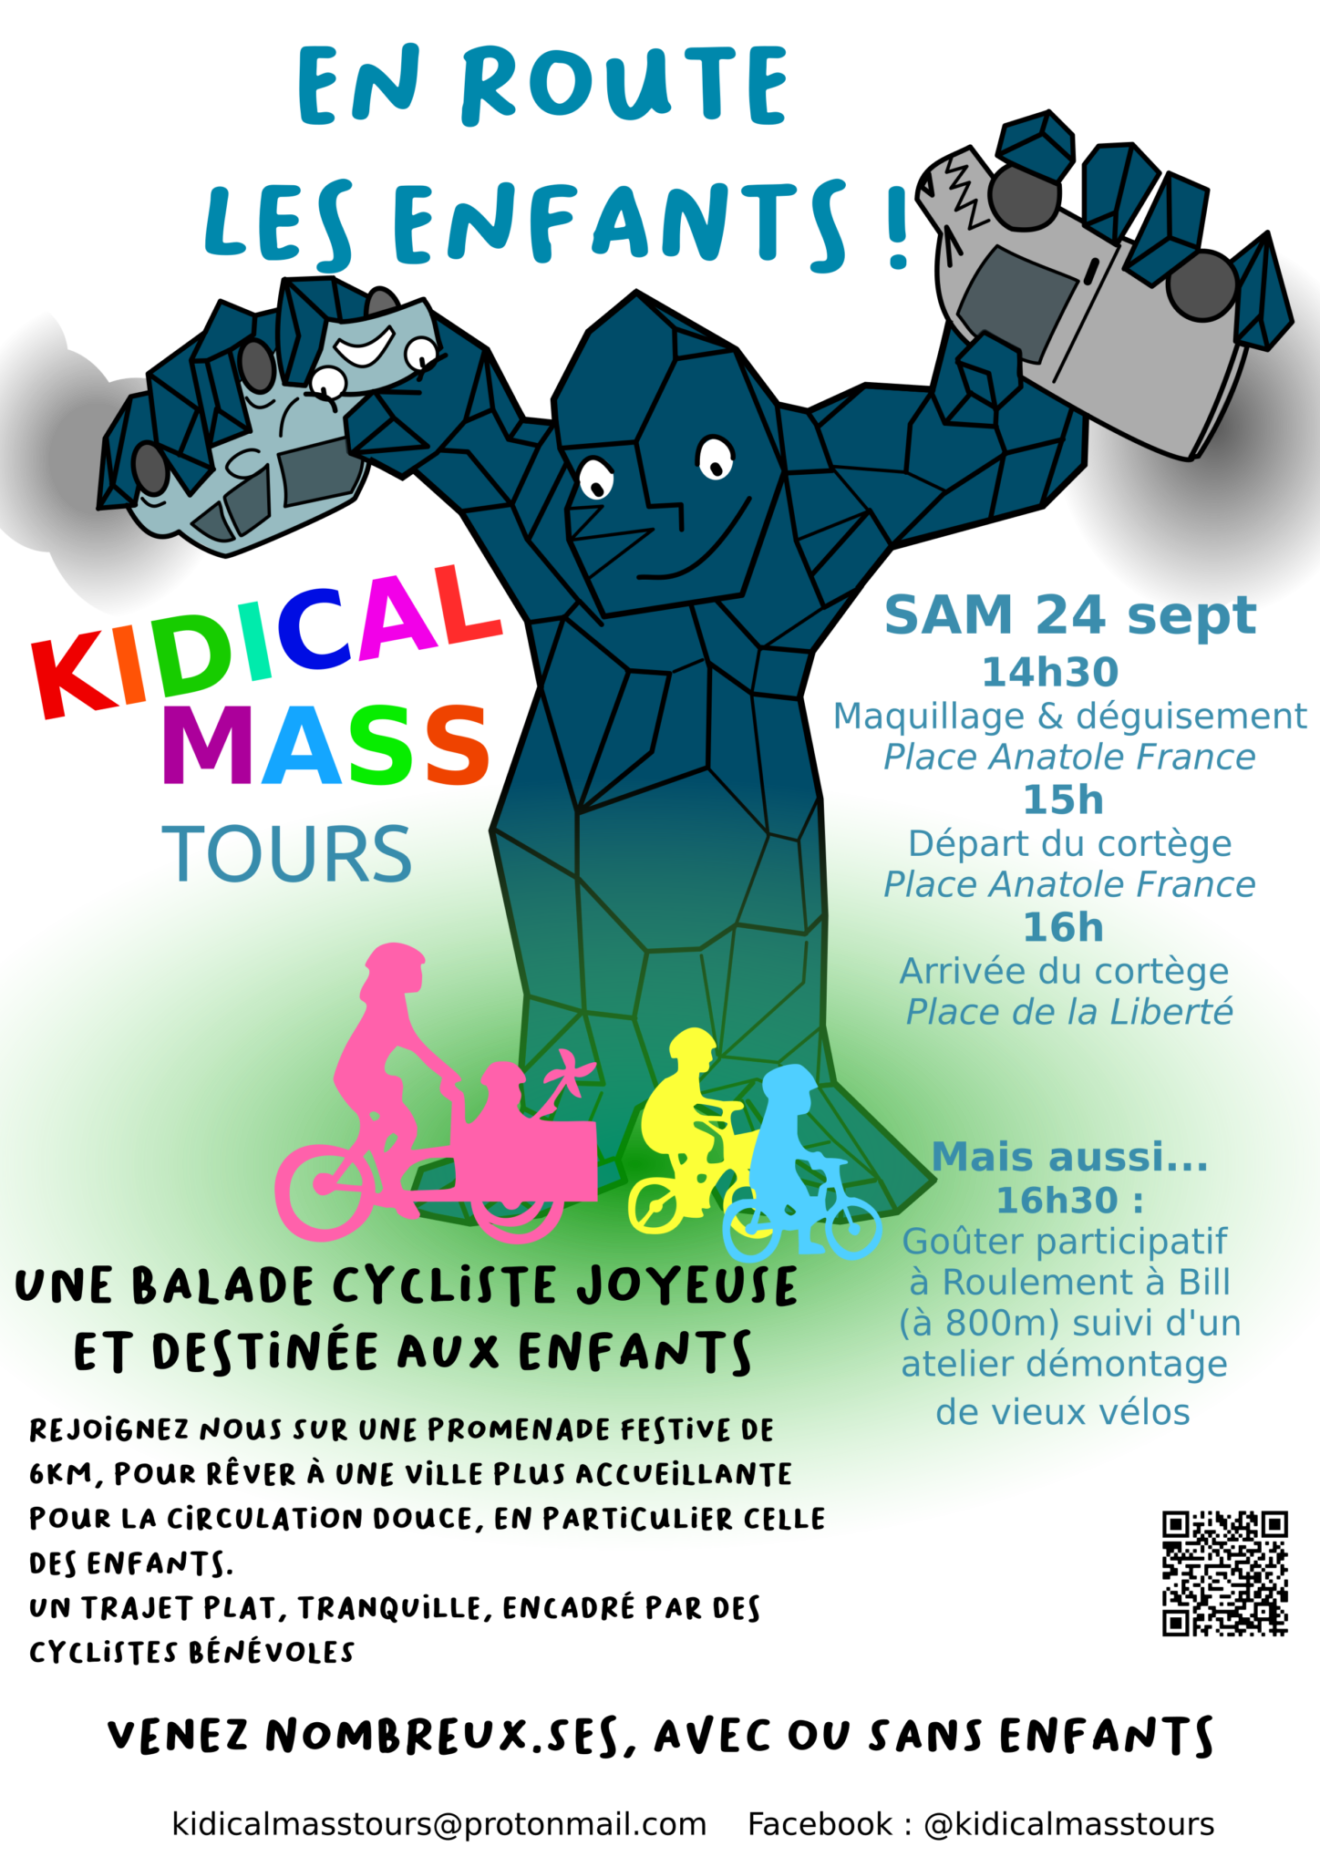 Affiche de la Kidical Mass du samedi 24 septembre 2022 à Tours.